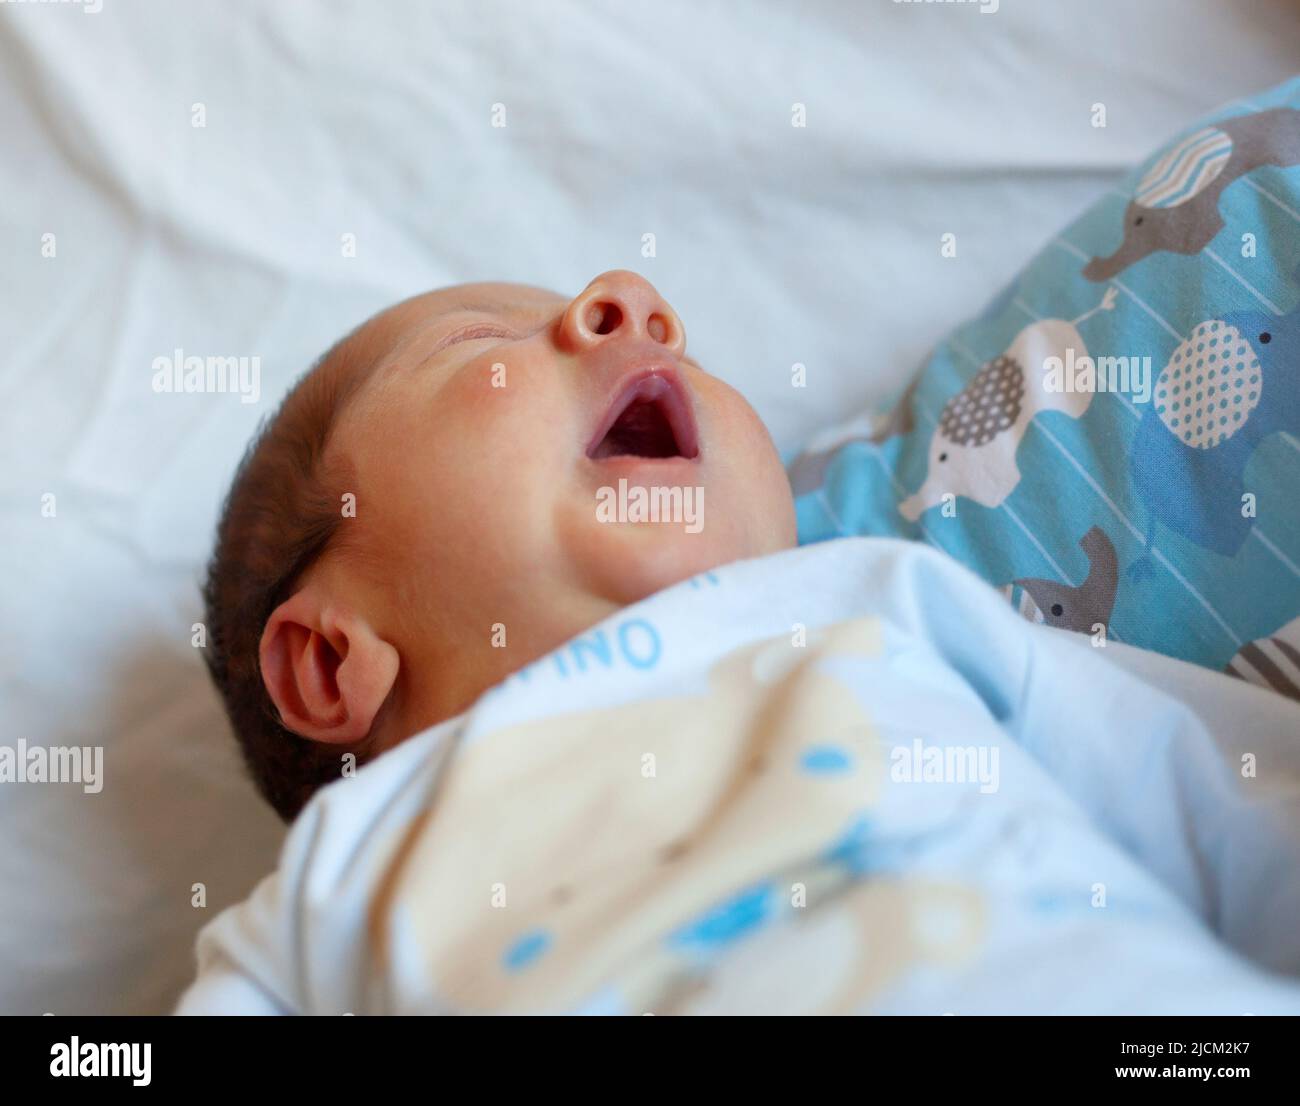 Detalle de la boca de un recién nacido al bostezar. Enfoque selectivo en la boca para acentuar el concepto del significado del bostezo. Foto de stock